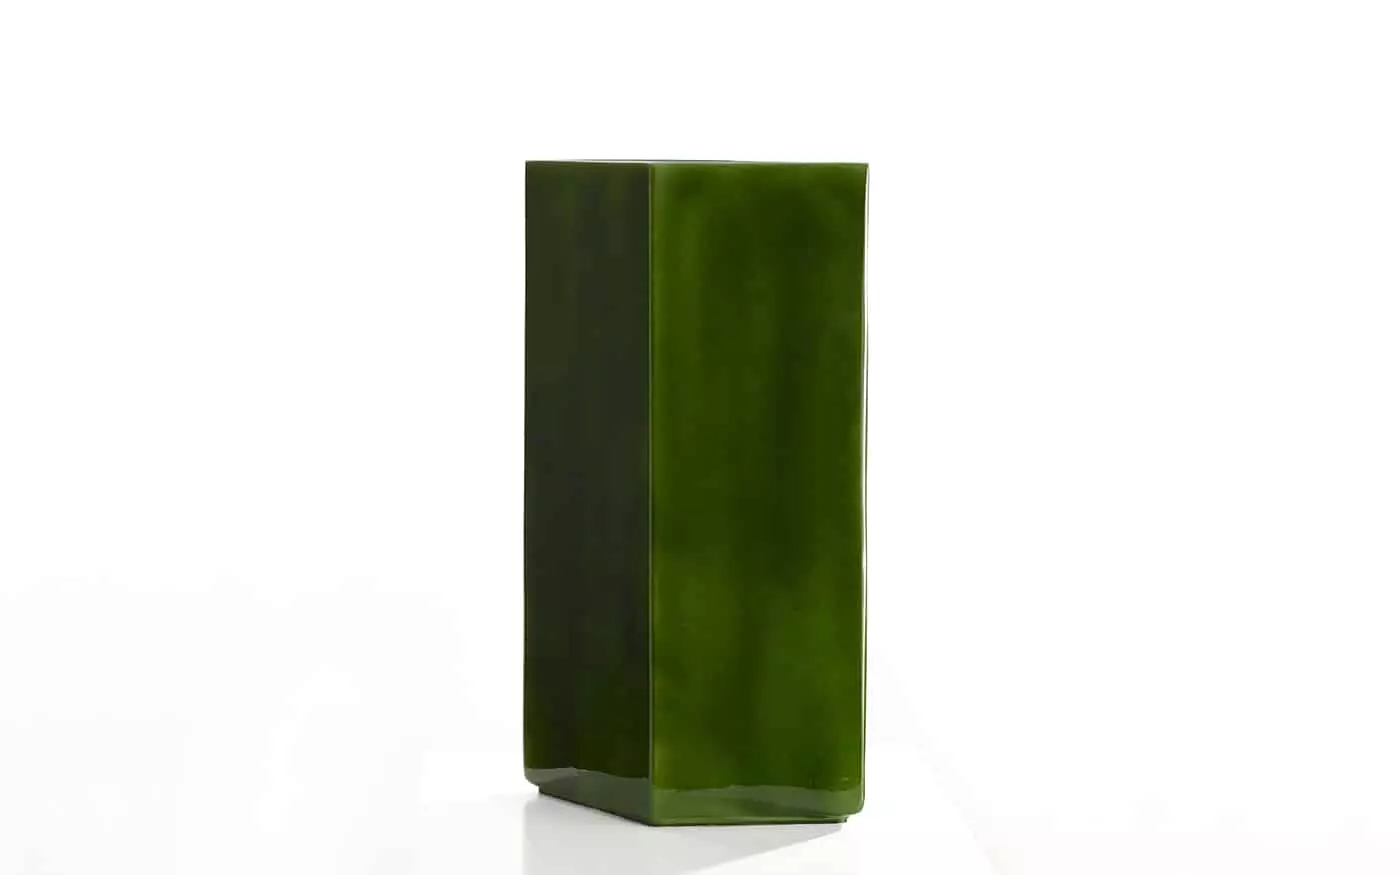 Vase Losange 84 green - Ronan and Erwan Bouroullec - .